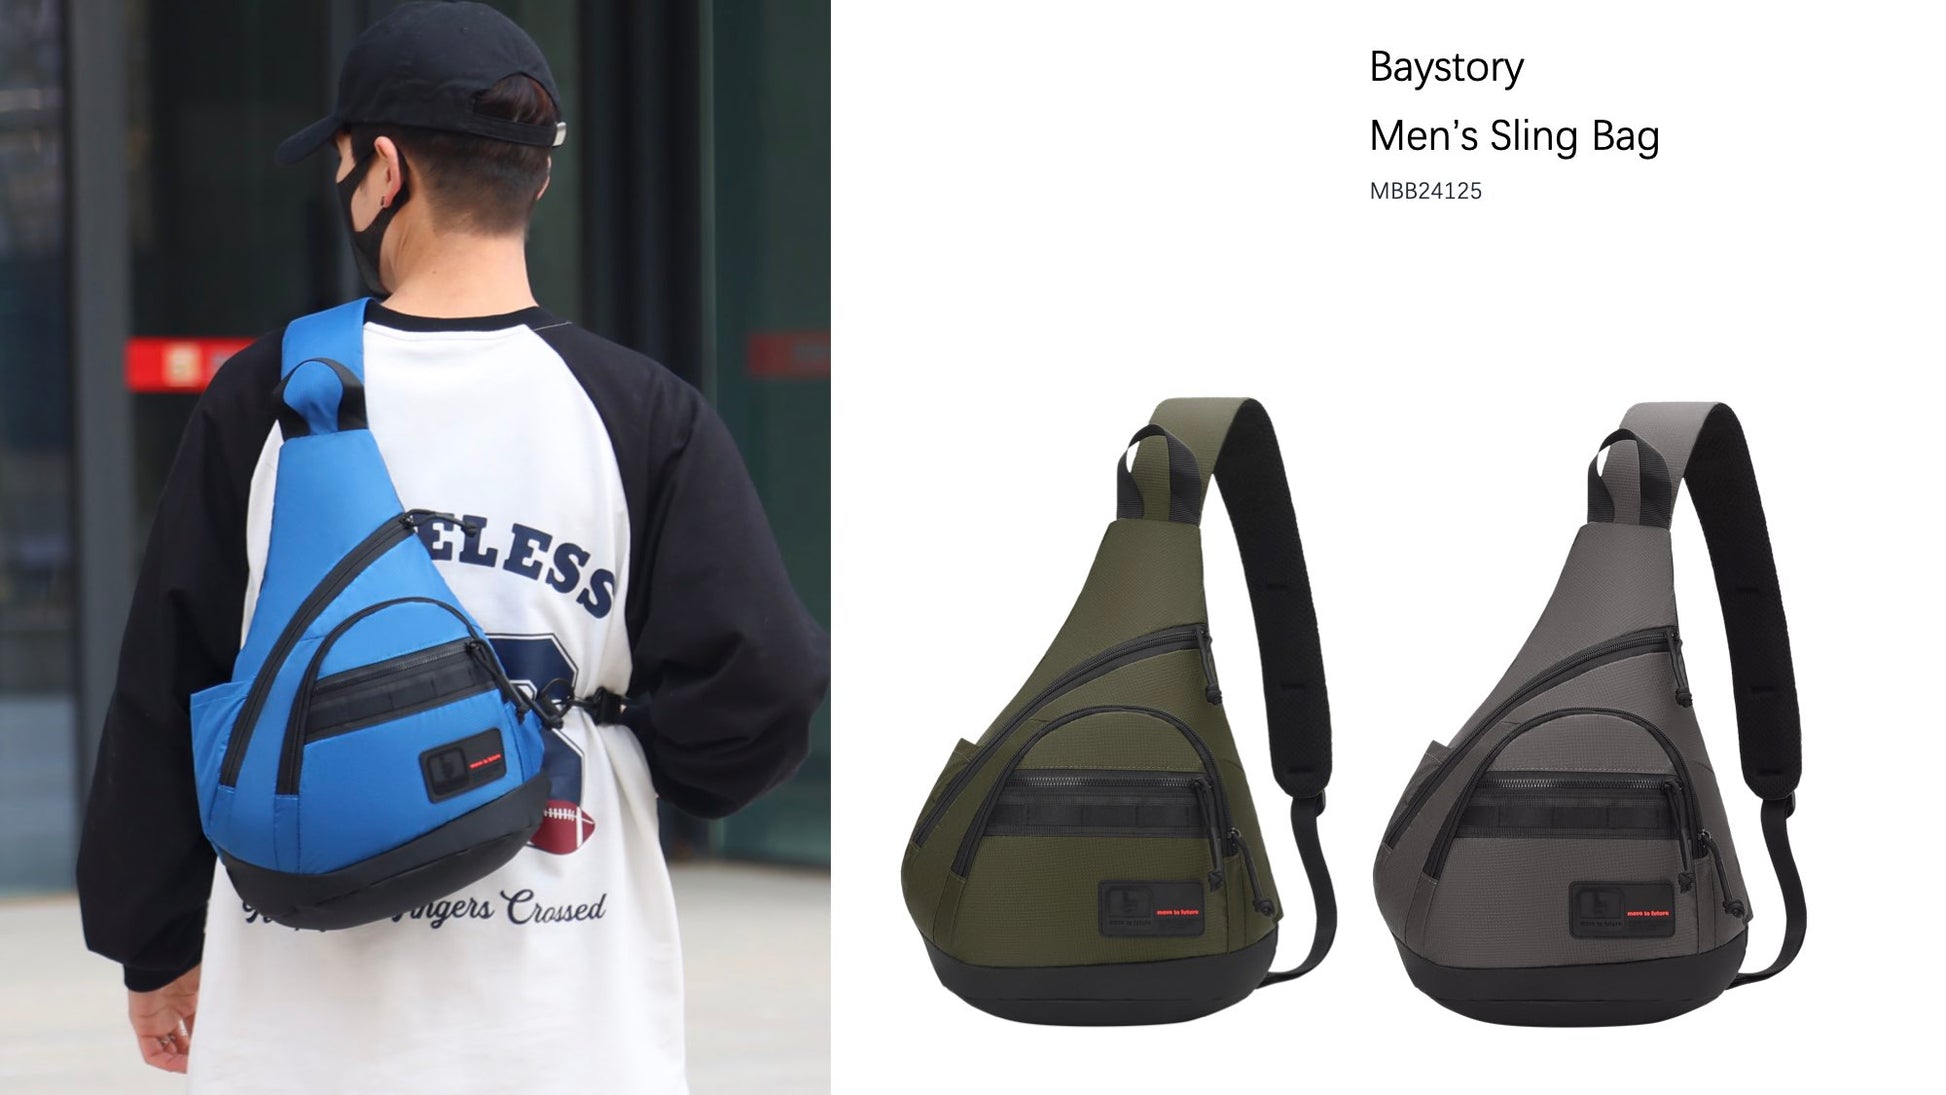 Baystory Men’s Sling Bag MBB24125 - Baystory